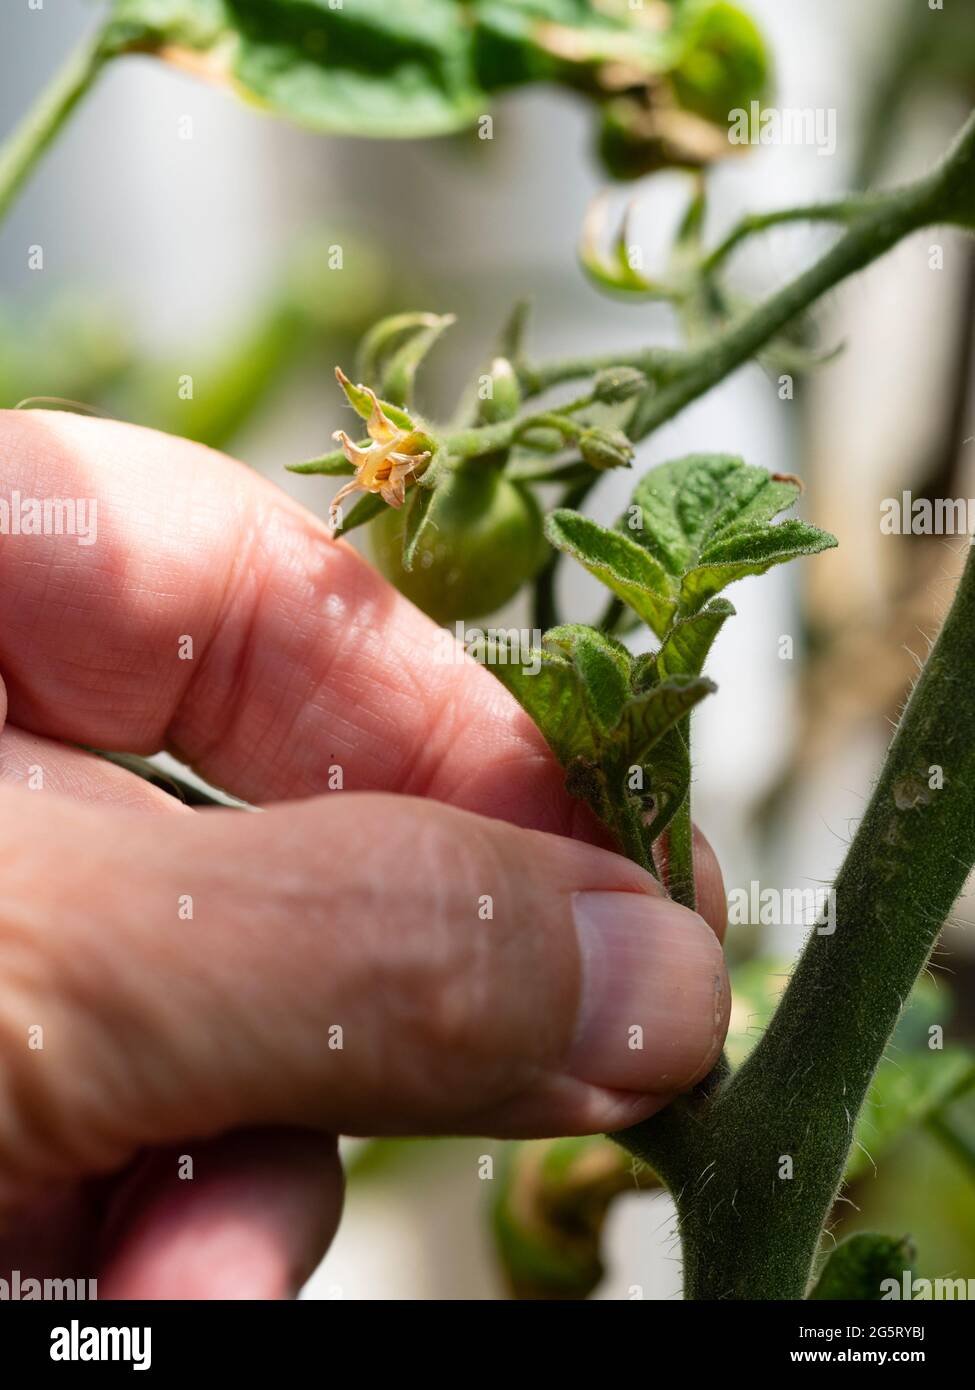 Preparación para retirar el tiro lateral del tomate de cordón indeterminado Solanum lycopersicum 'Outdoor Girl' Foto de stock